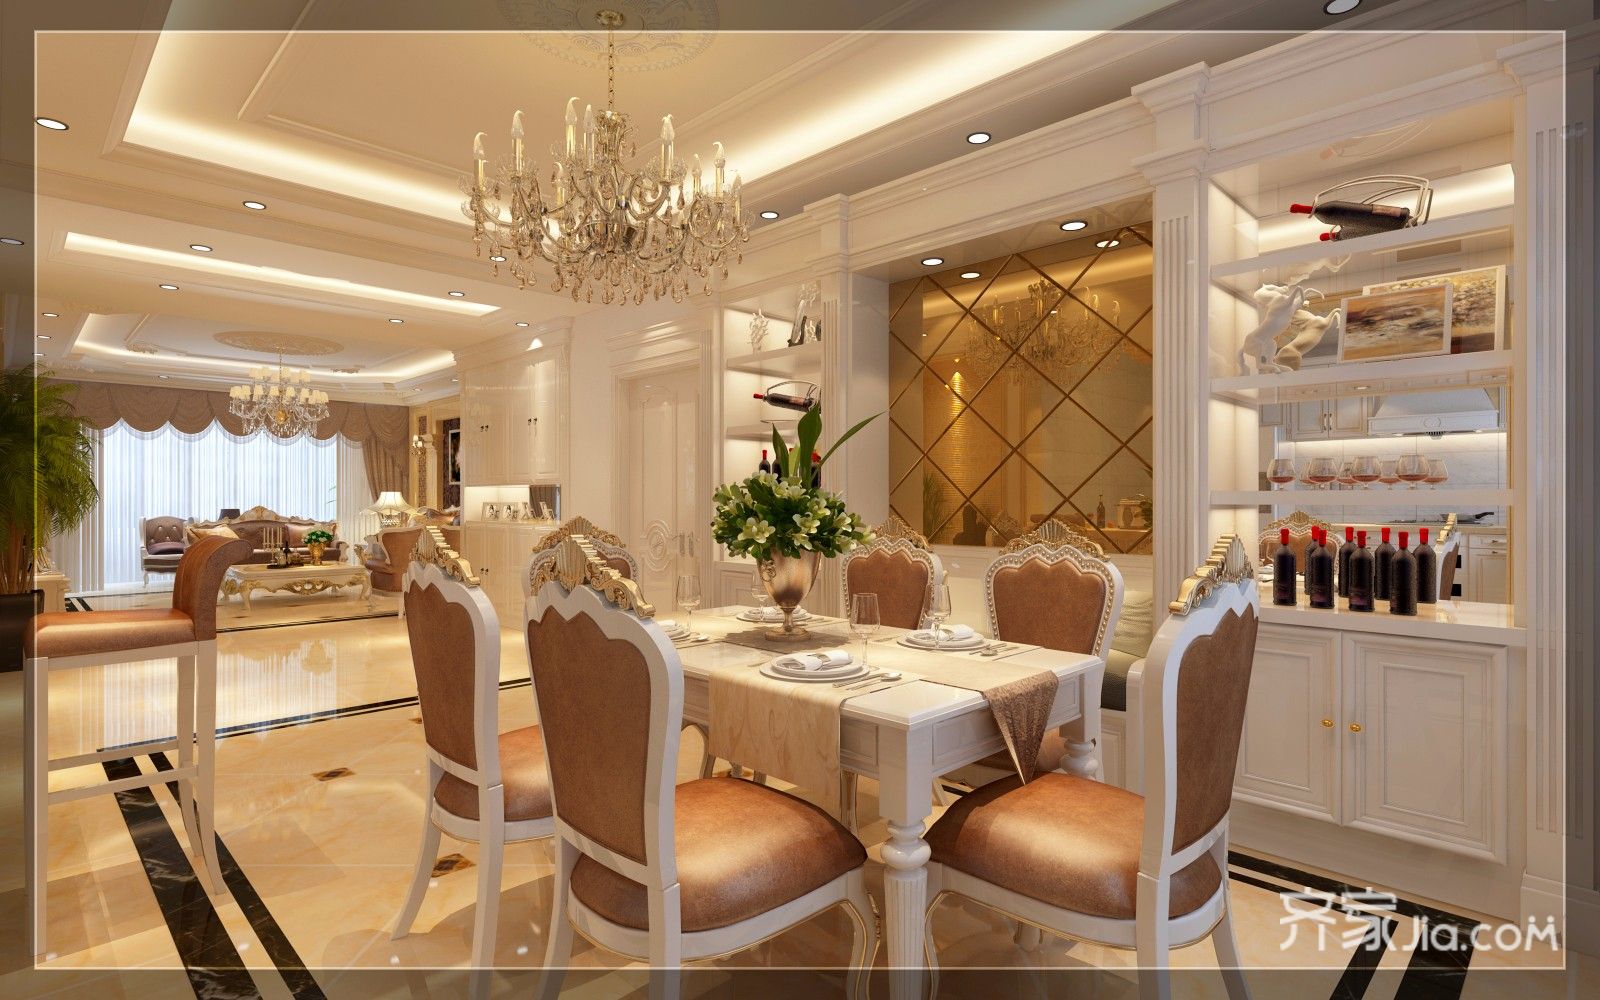 富裕型装修,140平米以上装修,三居室装修,厨房,欧式风格,餐厅背景墙,金色